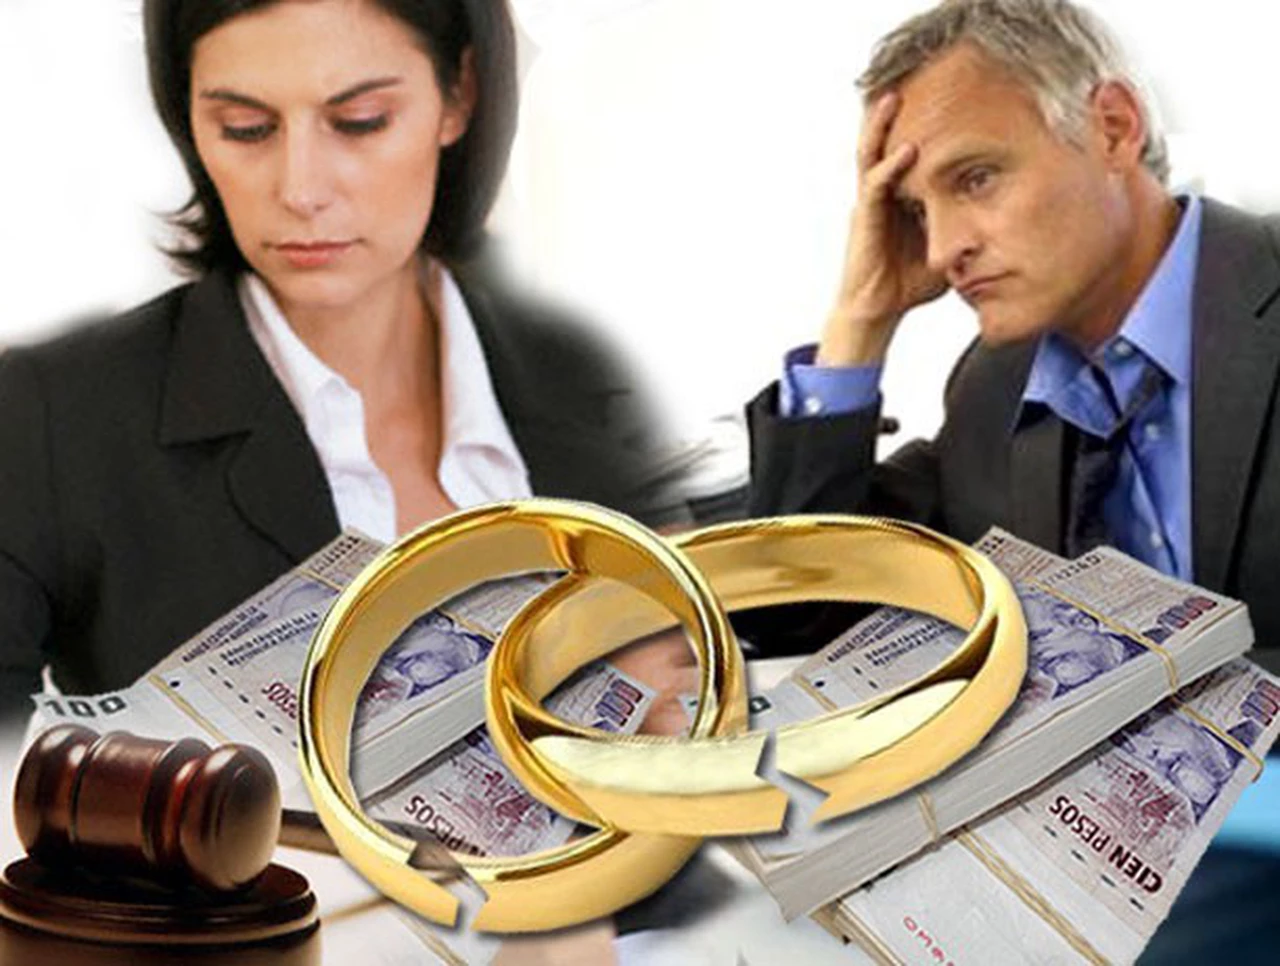 Conceden el divorcio a un hombre por injurias a sus hijas de anterior pareja